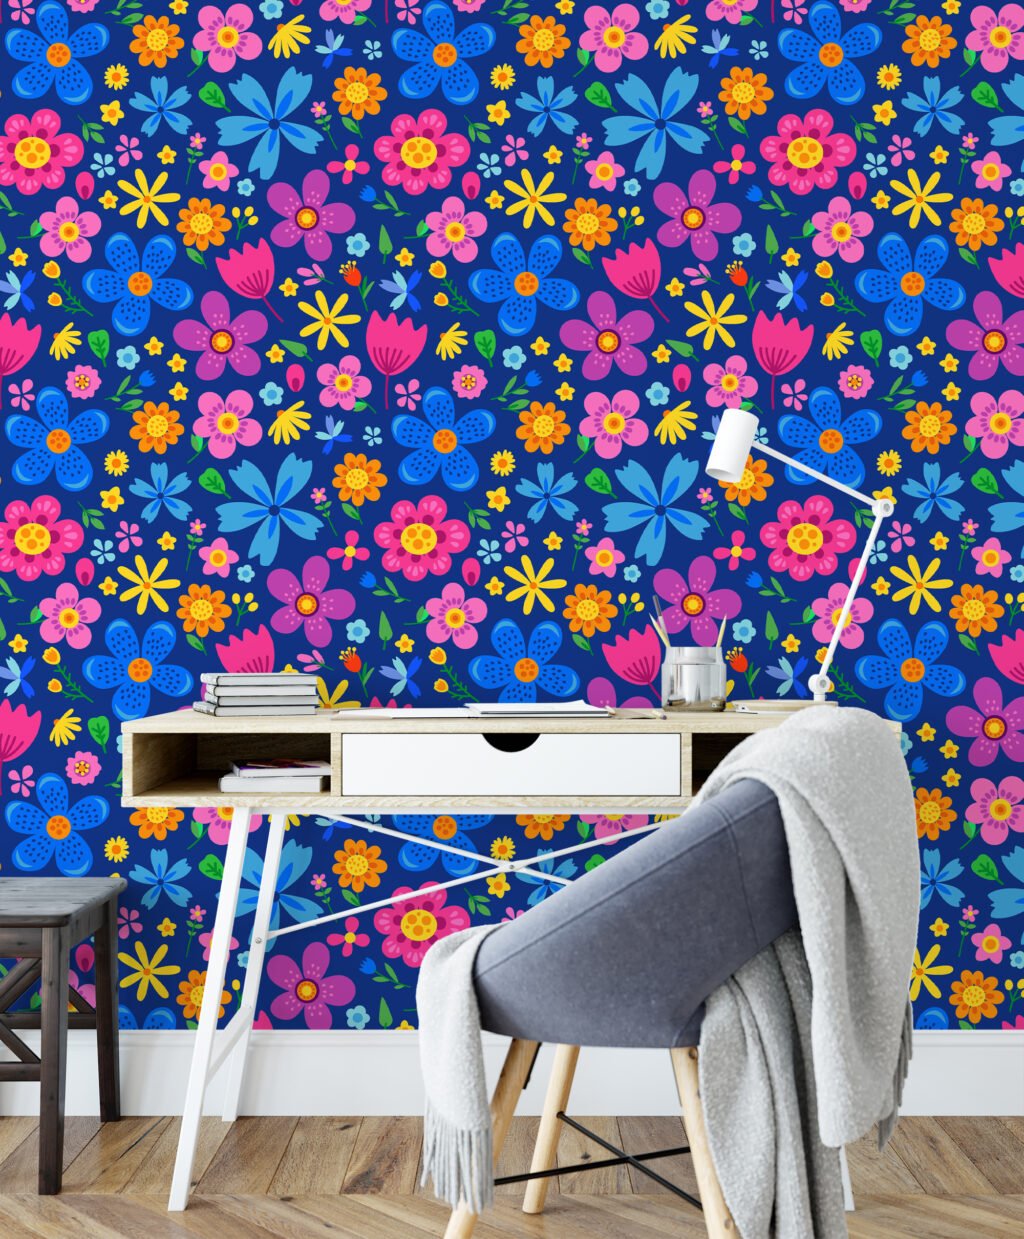 Canlı Renkli Halk Sanatı Çiçek İllüstrasyonu Duvar Kağıdı, Neşeli Çayır Çiçekli Duvar Posteri Çiçekli Duvar Kağıtları 4